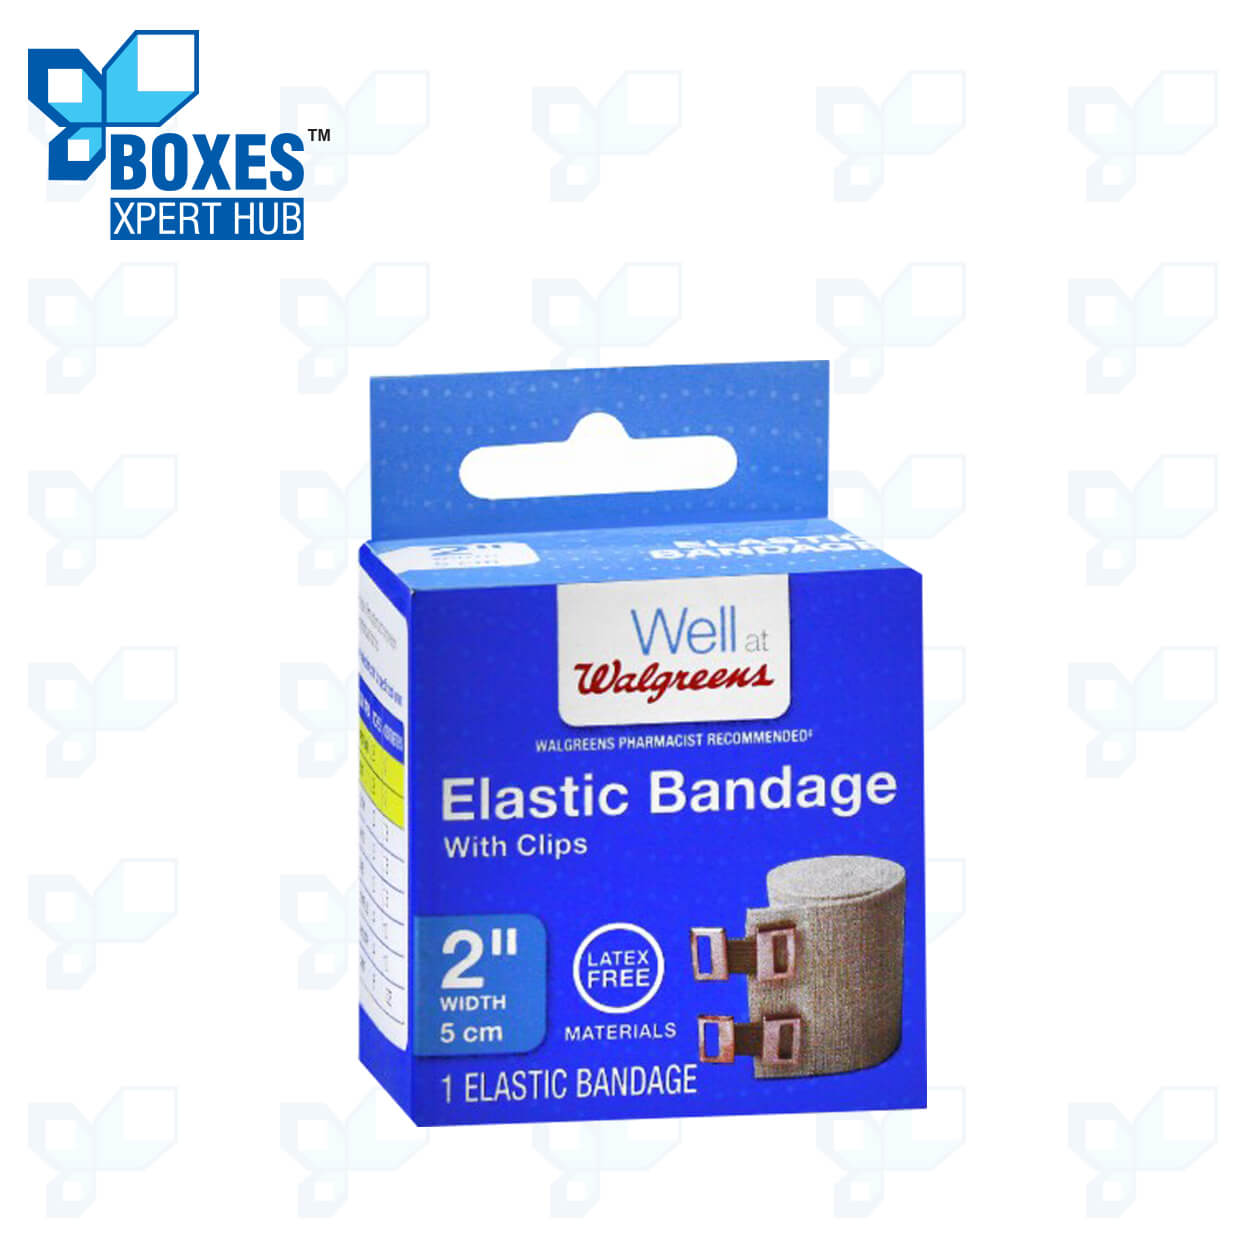 Elastic Bandage Boxes